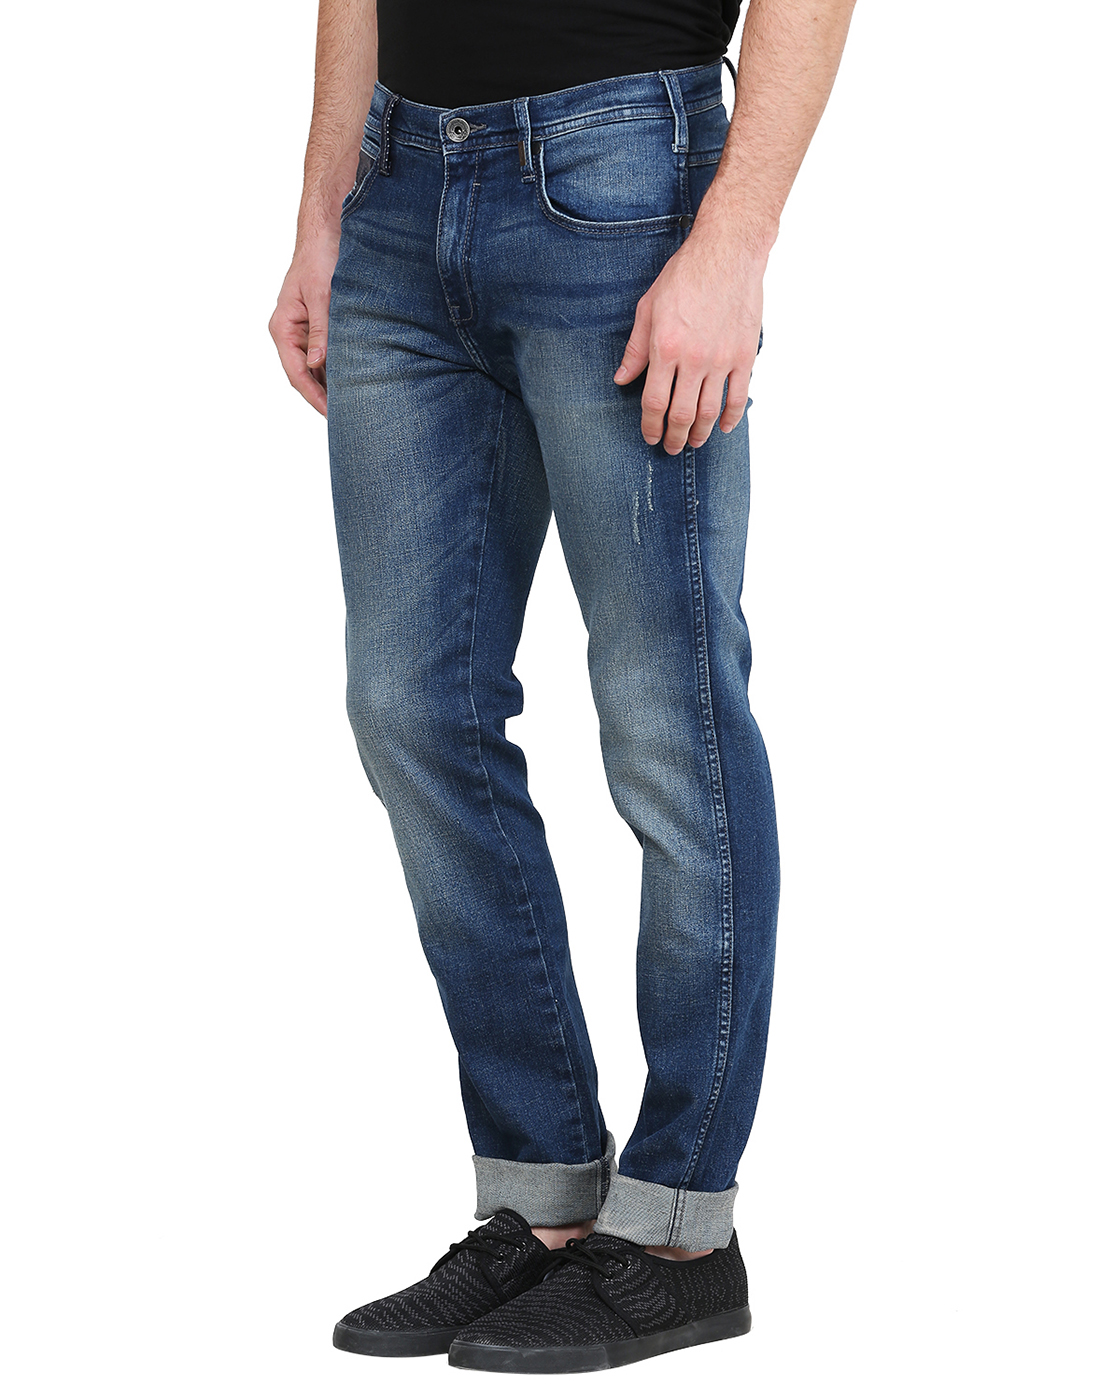 Buy Wrangler Blue Jeans For Men Online @ ₹1977 from ShopClues